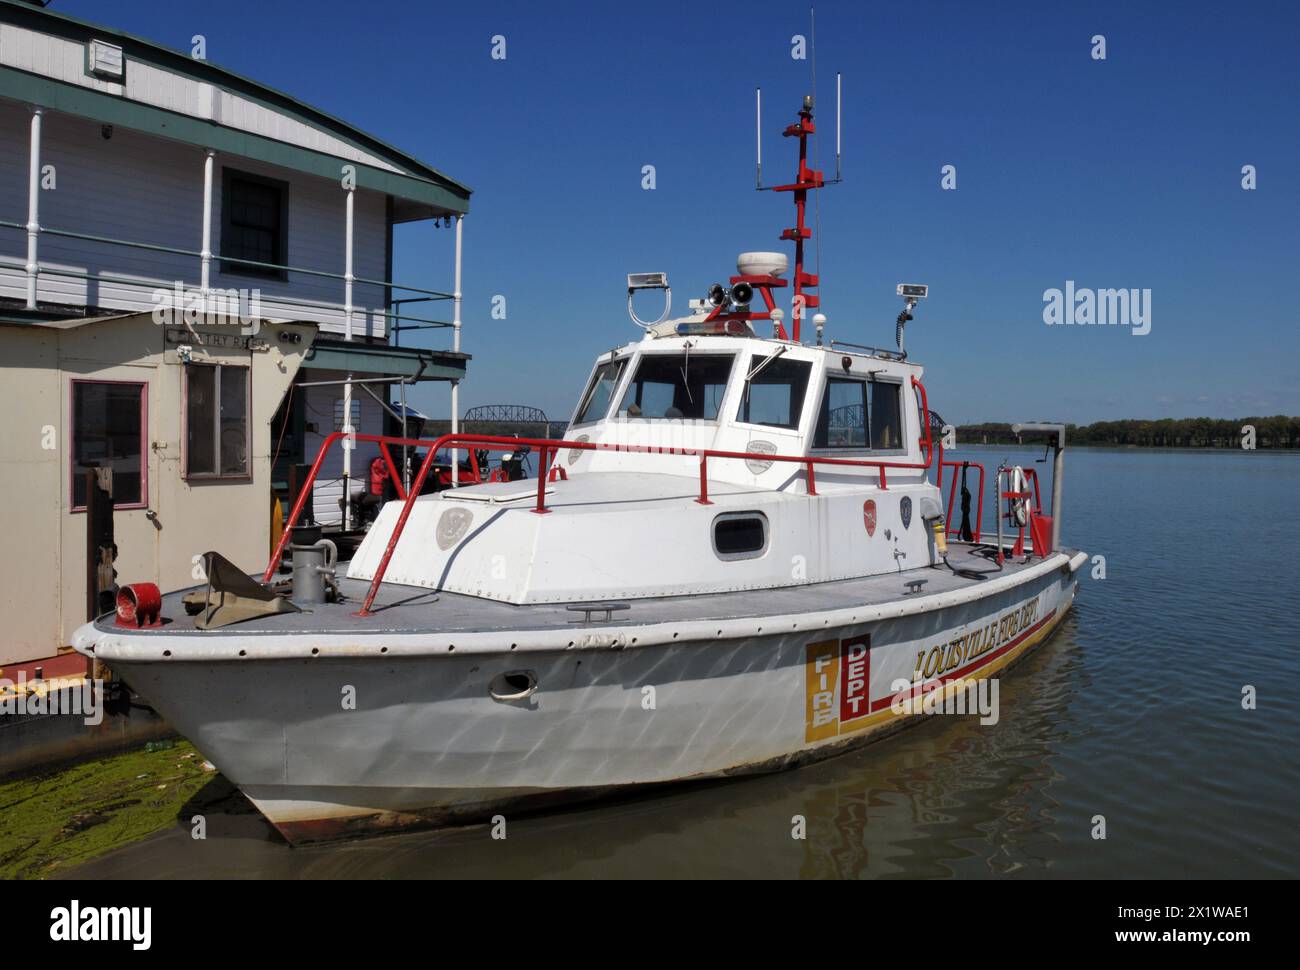 Ein Feuerwehrboot, das von der Louisville Fire Department betrieben wird, liegt am Ohio River in der Innenstadt von Louisville. Stockfoto